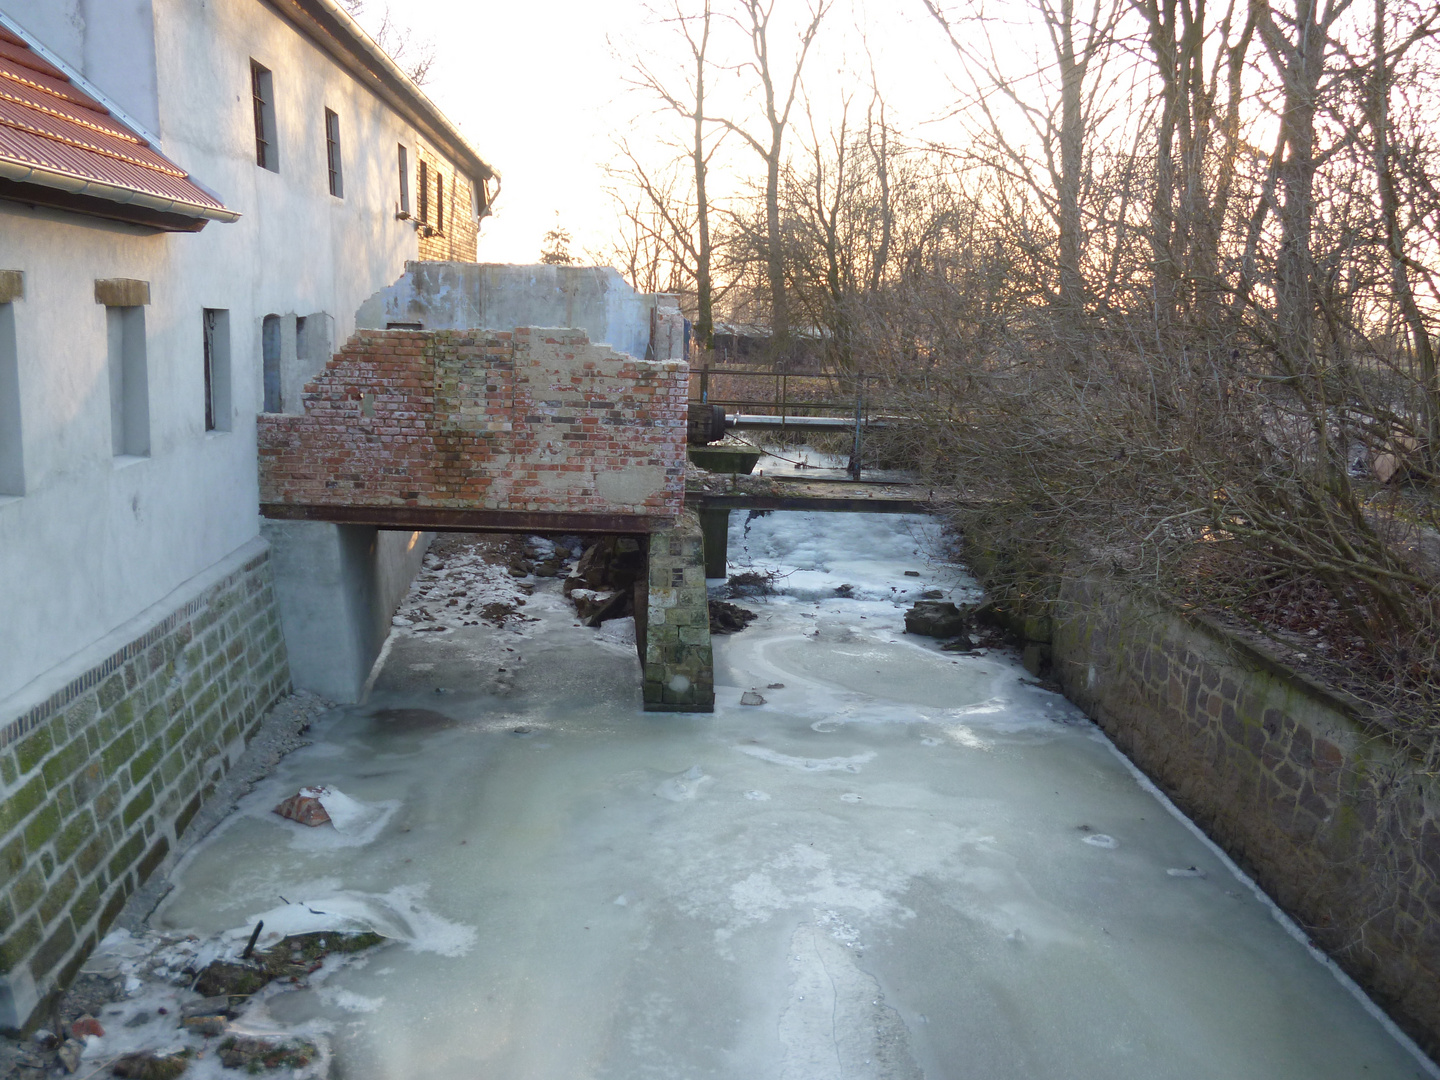 Alte Mühle in Saathain/Elbe-Elster im Winter